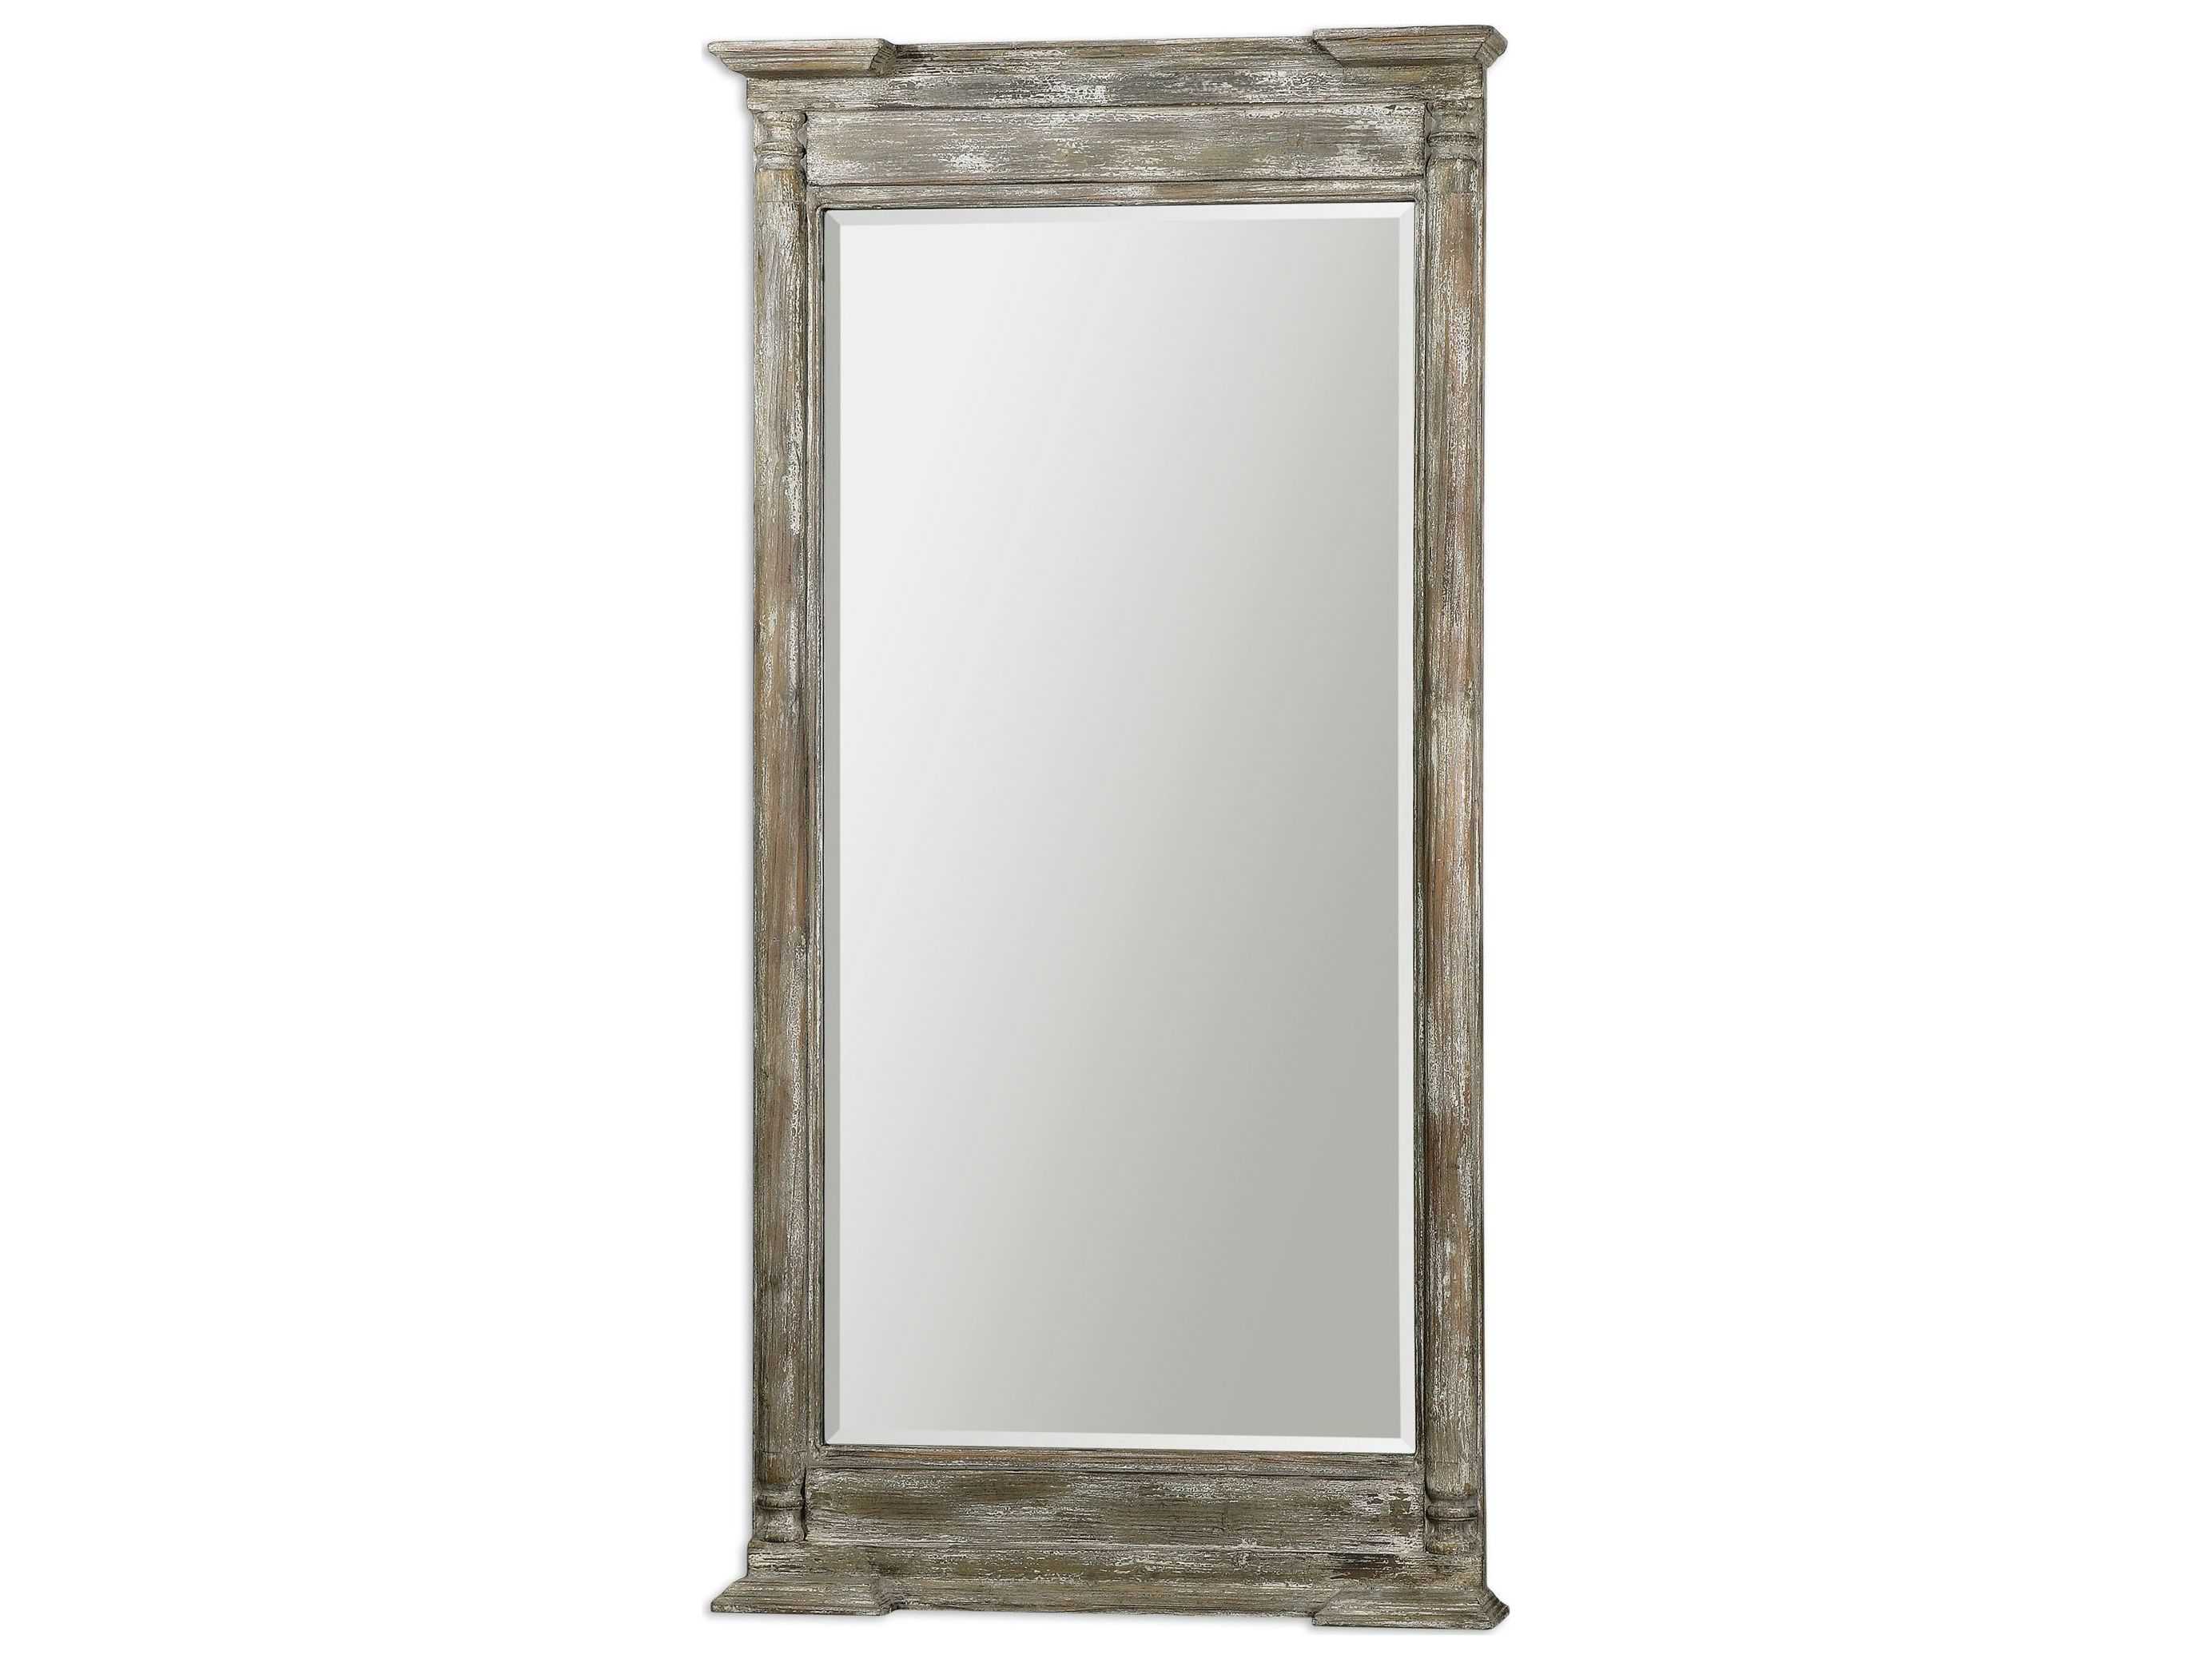 Зеркала в раме в спб. Зеркало Uttermost 09109. Зеркало klimi 45755 серая рама. Прямоугольное зеркало в деревянной раме. Зеркало настенное в деревянной раме.